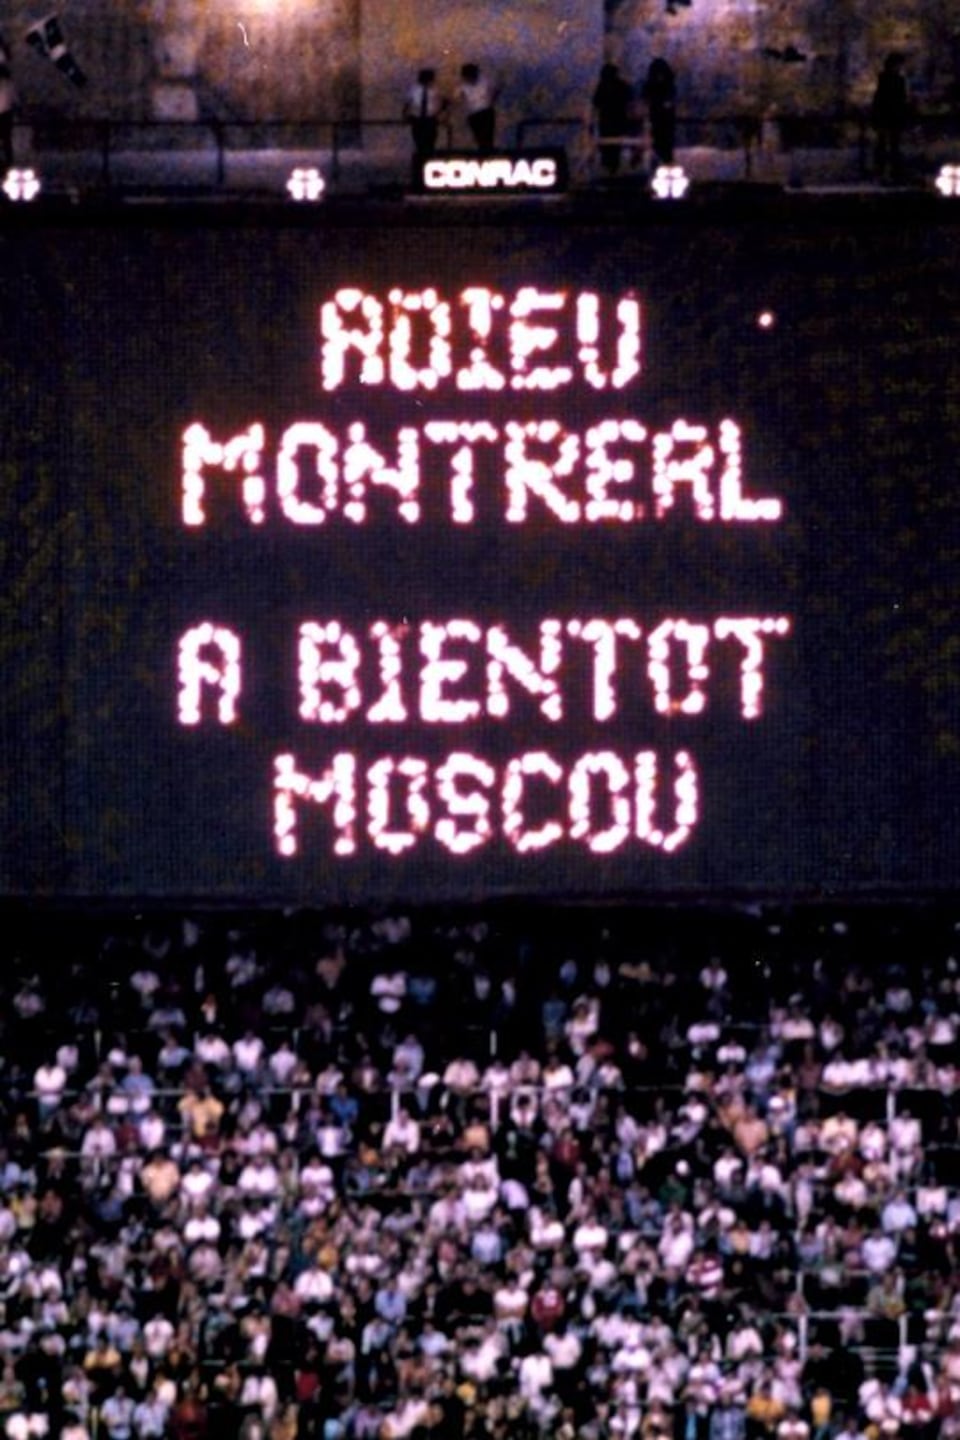 Lors de la cérémonie de clôture des Jeux de Montréal, une inscription en lettres lumineuses : Adieu Montréal, à bientôt Moscou.